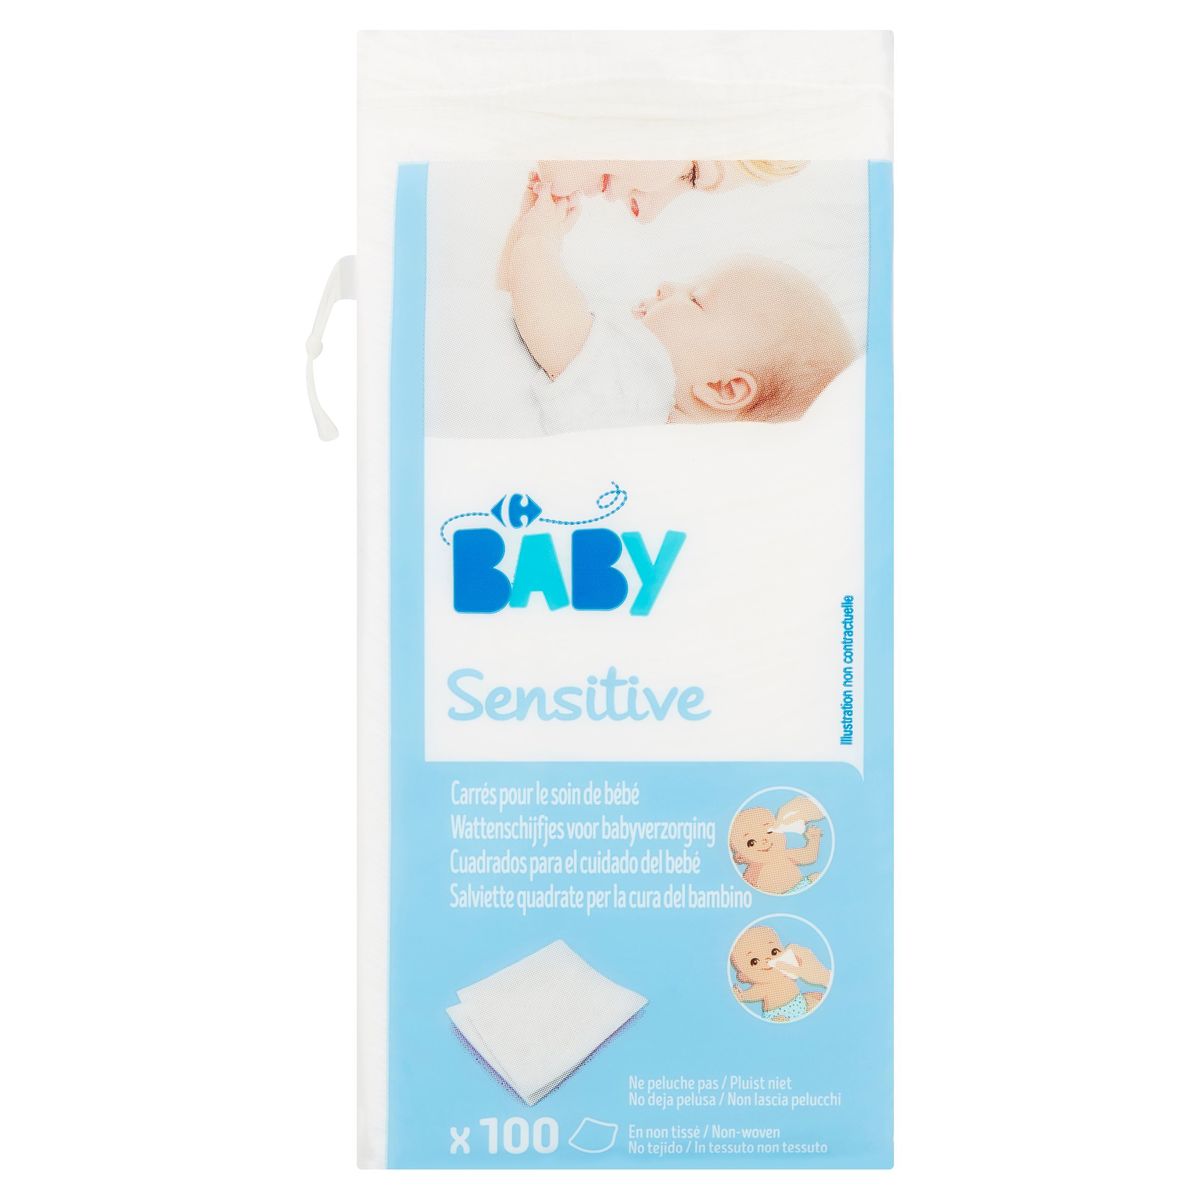 Carrefour Baby Sensitive Carrés pour le Soin de Bébé 100 Pièces